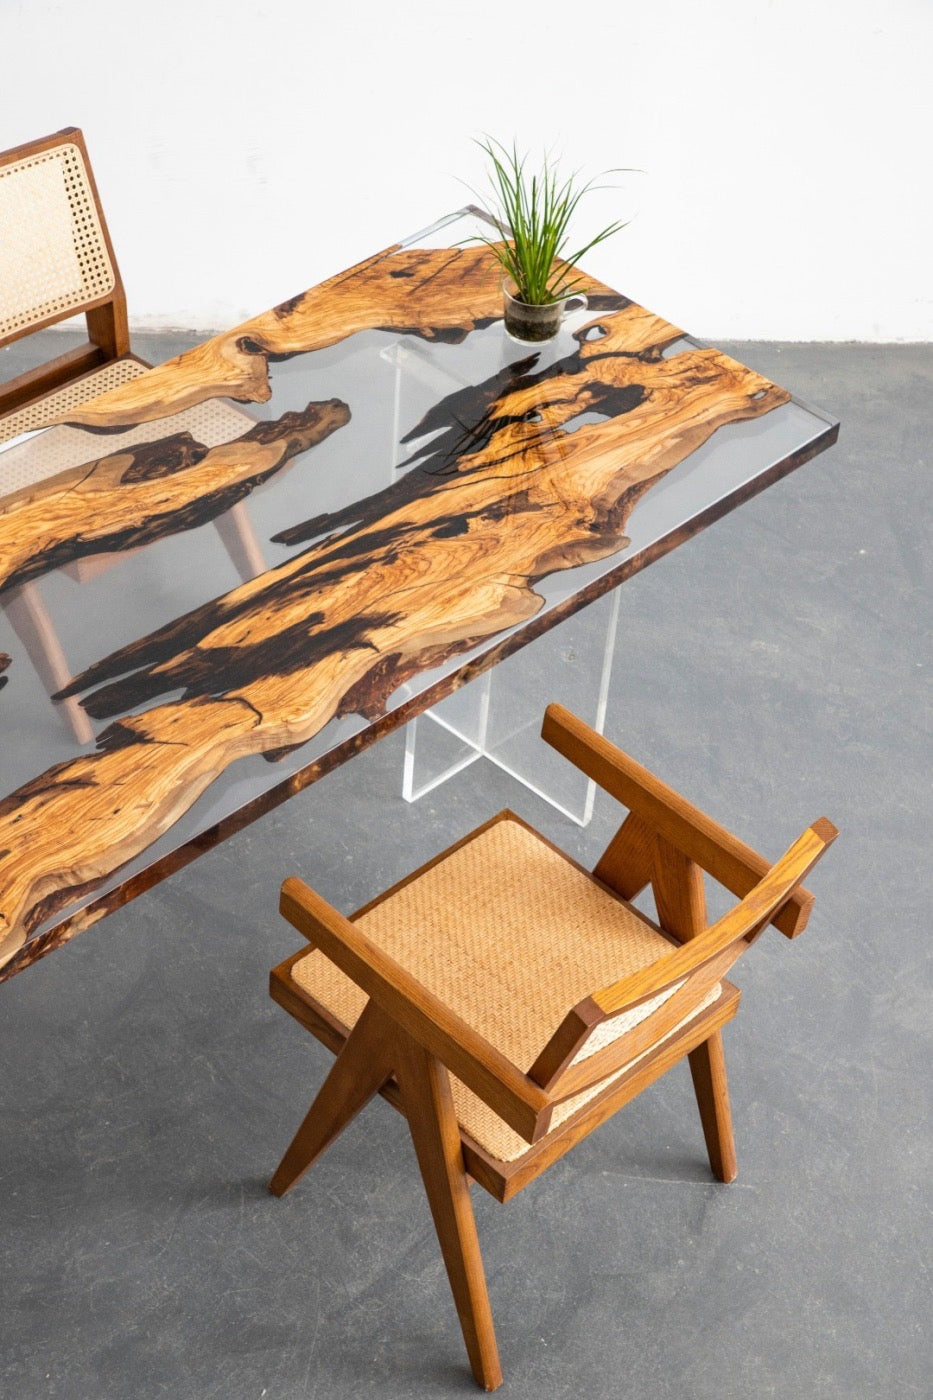 طاولة إيبوكسي من خشب الزيتون لايف إيدج ريفر، طاولة إيبوكسي من خشب الزيتون، طاولة من راتنج خشب الزيتون